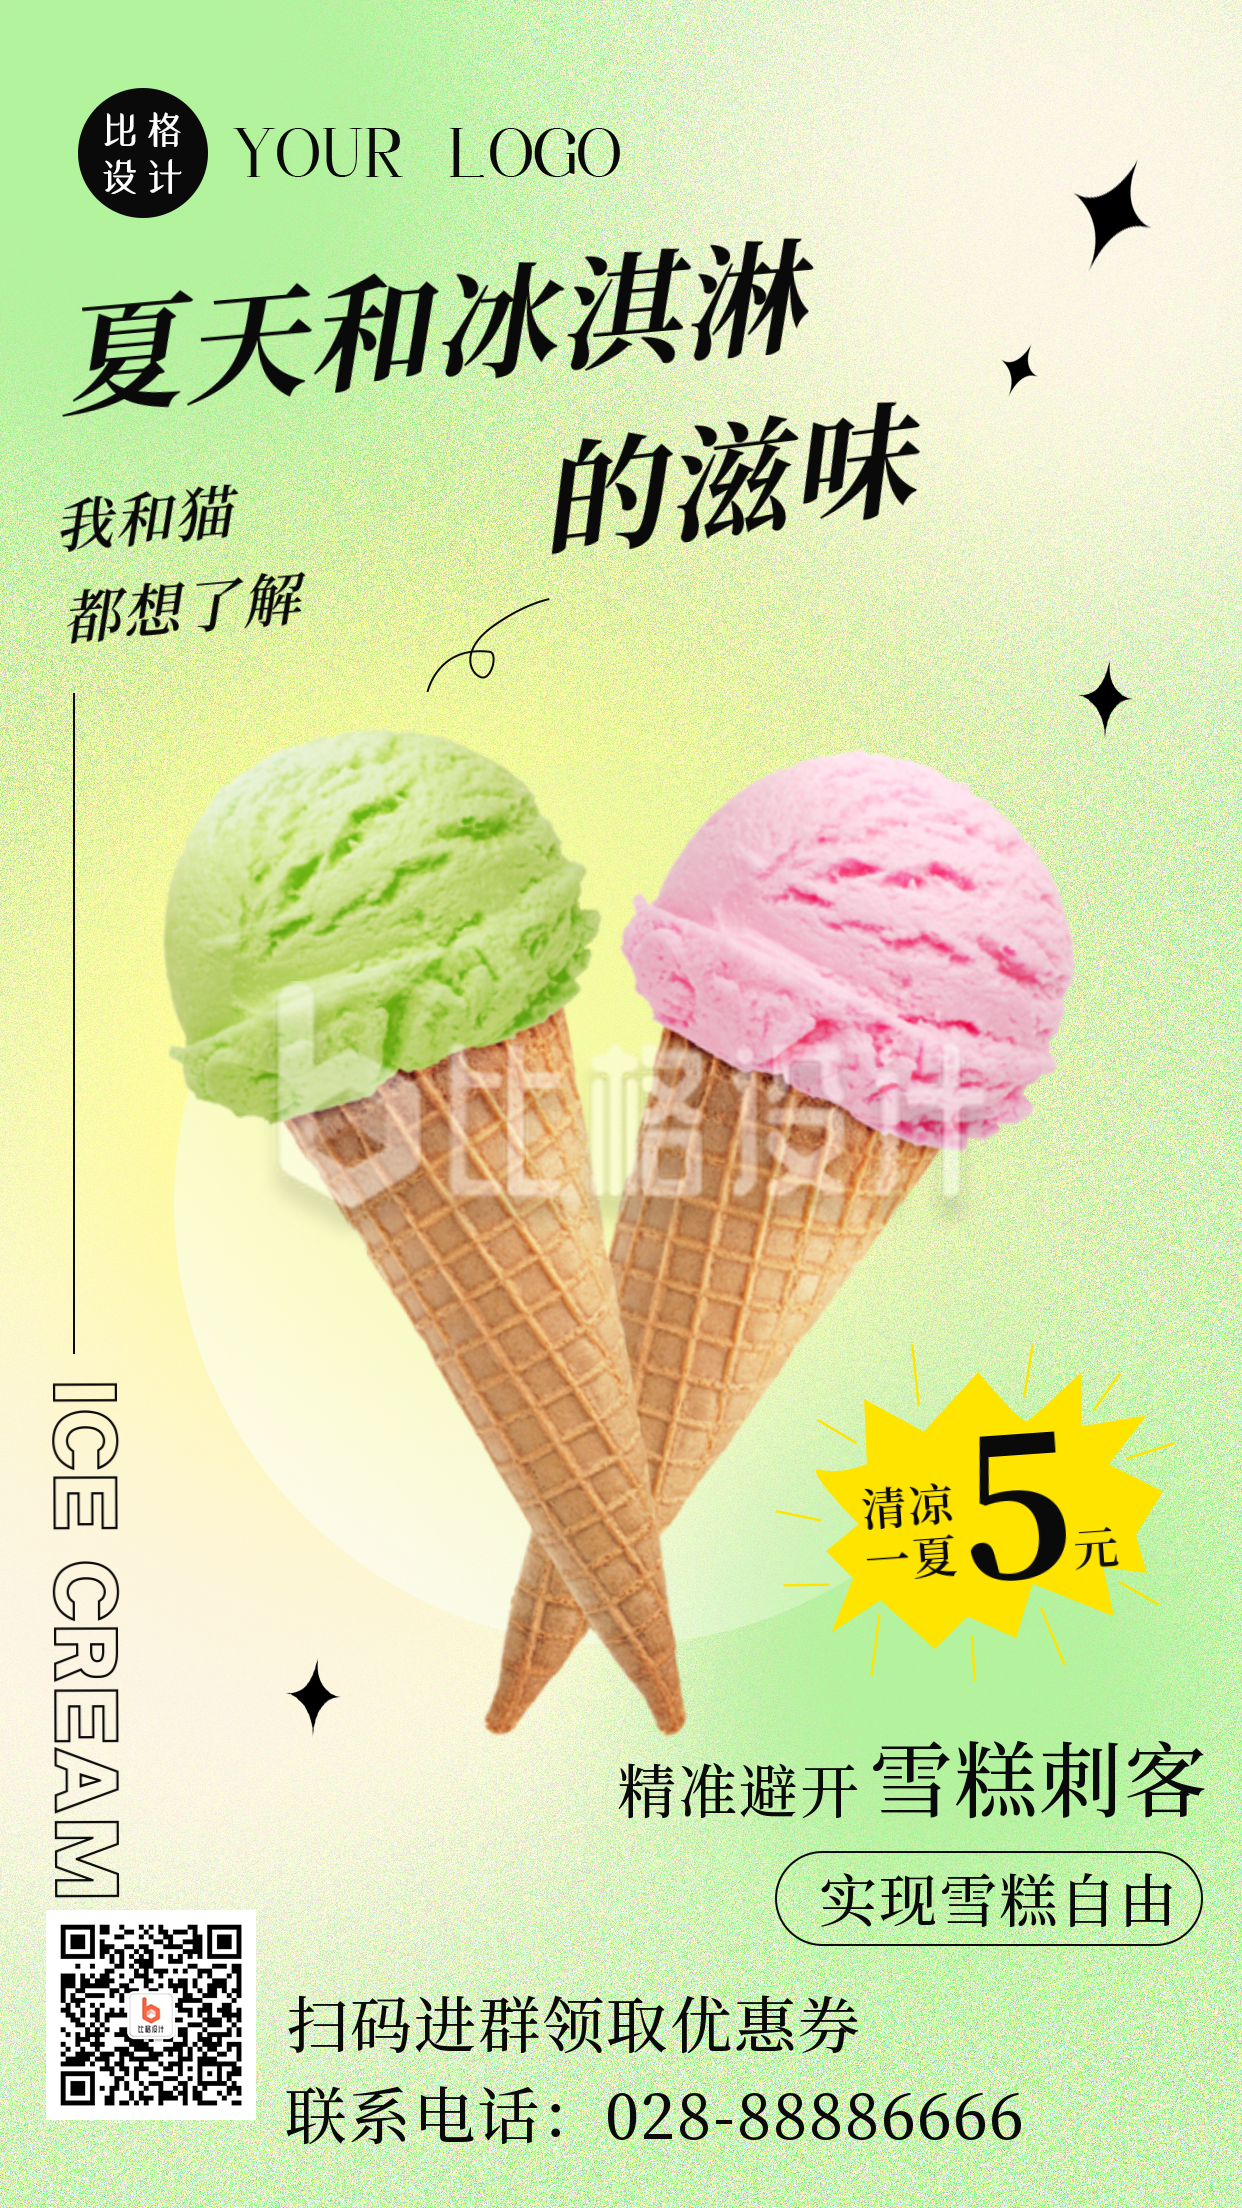 夏季实现冰淇淋自由避开雪糕刺客手机海报